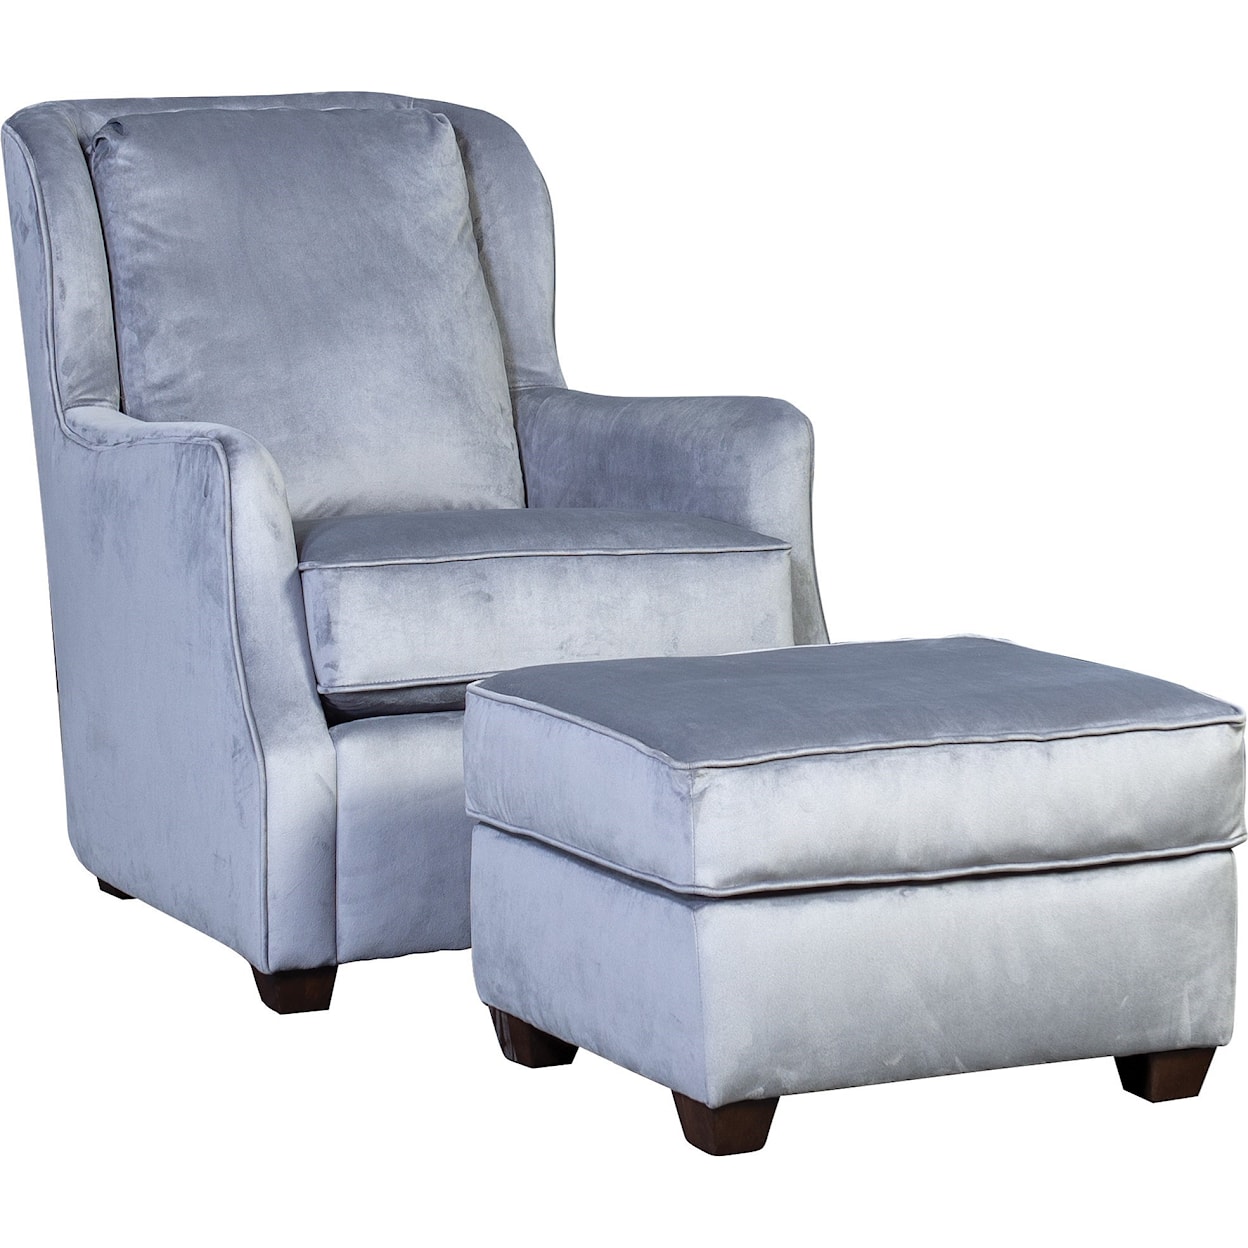 Mayo 5656 Chair and Ottoman